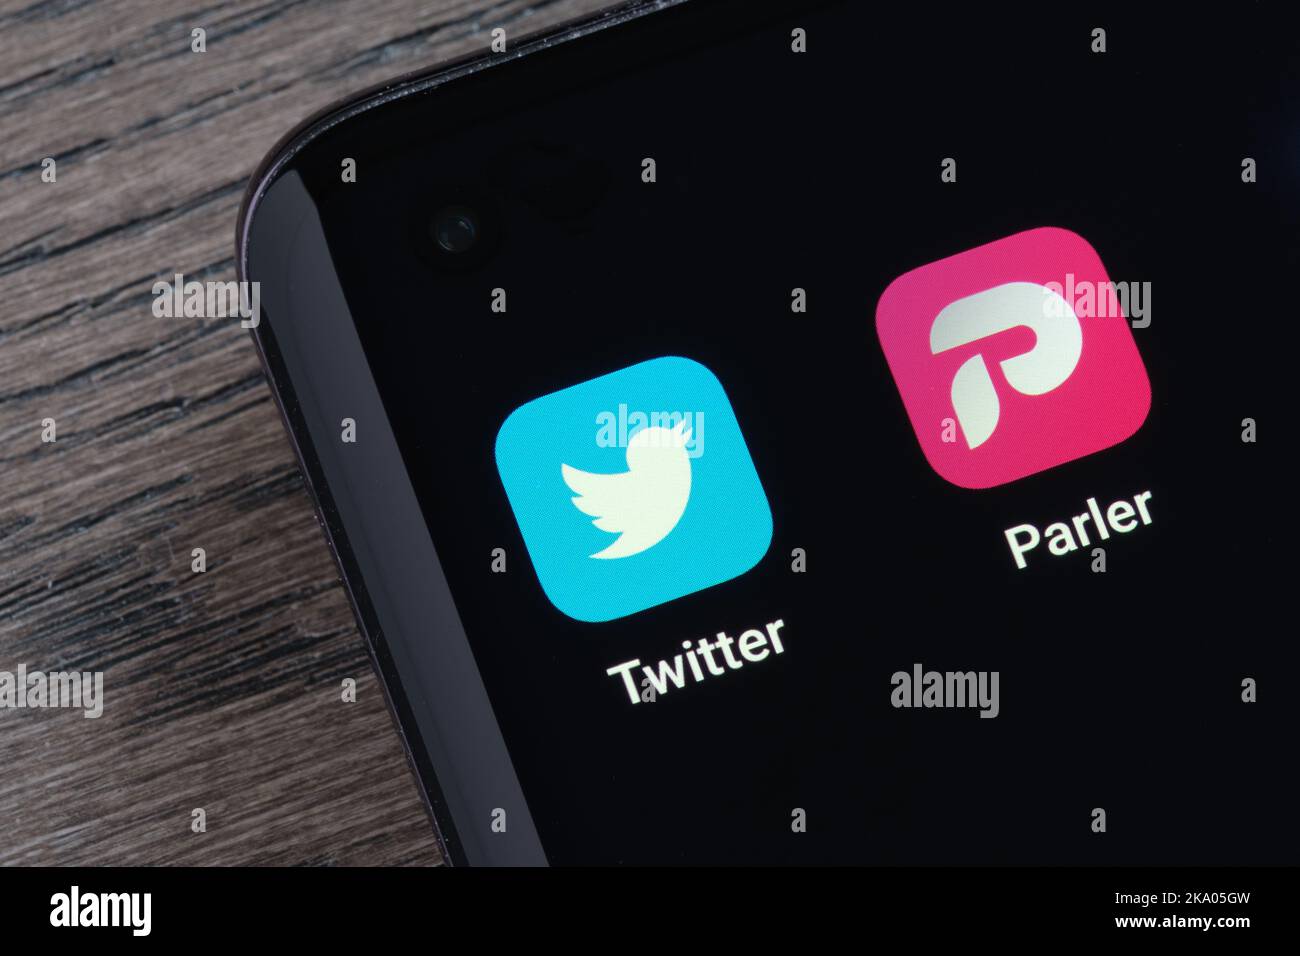 Twitter und Parler Apps auf dem Bildschirm des Smartphones gesehen. Konzept für den Wettbewerb. Stafford, Großbritannien, 30. Oktober 2022 Stockfoto